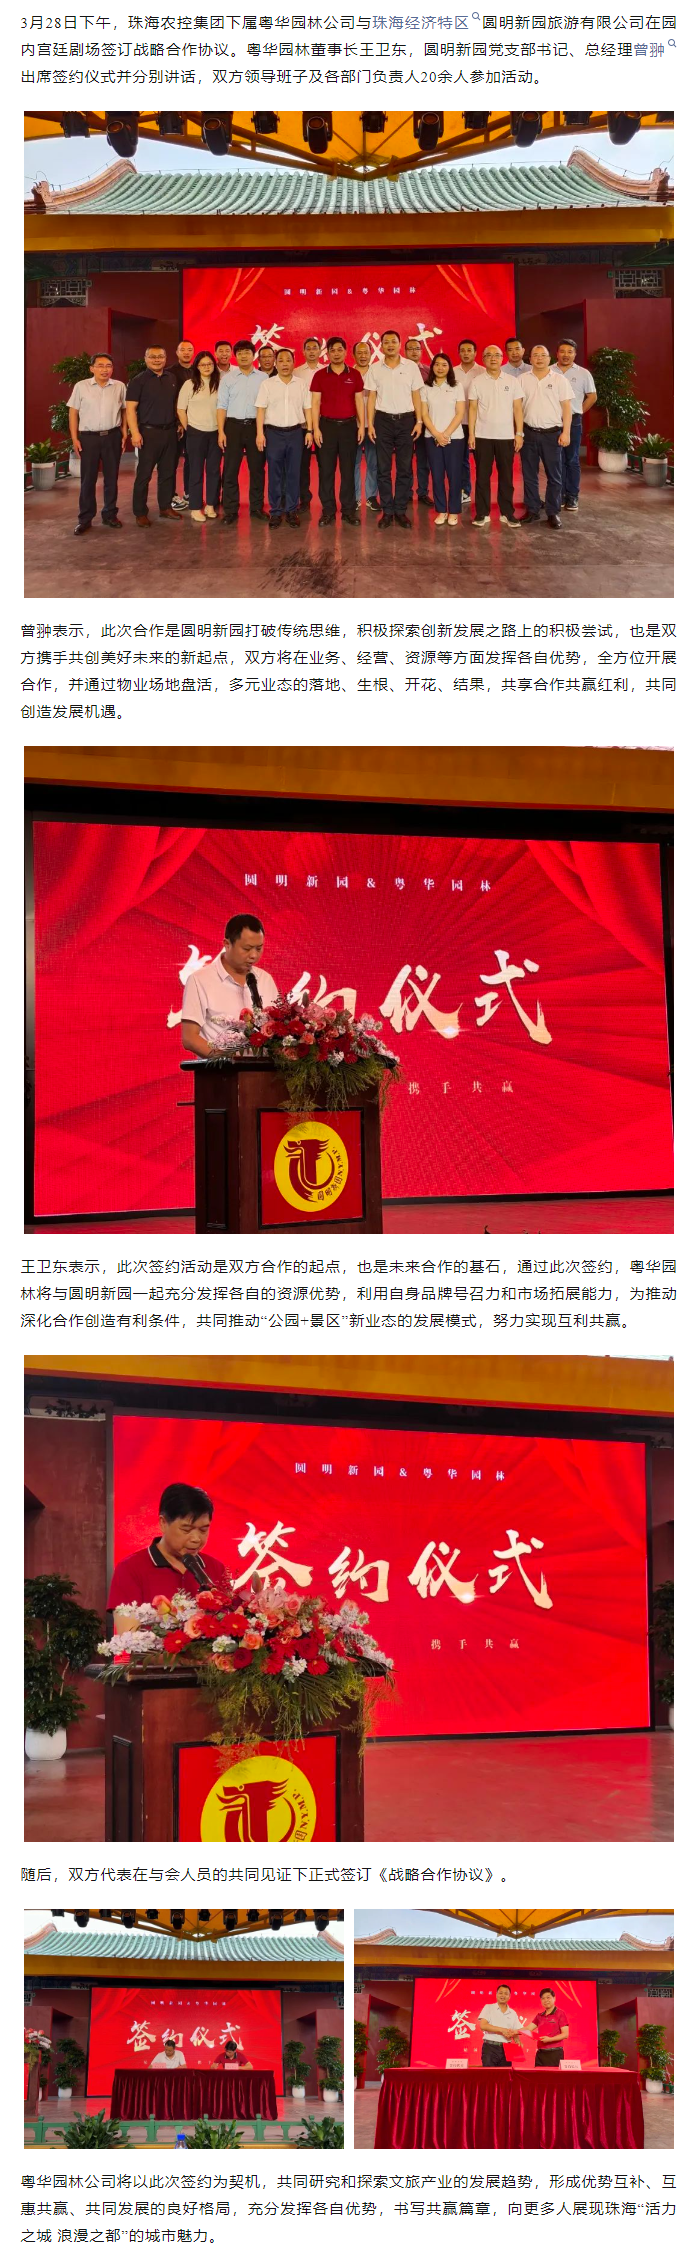 珠海农控集团下属粤华园林企业与圆明新园签订战略合作协议.png